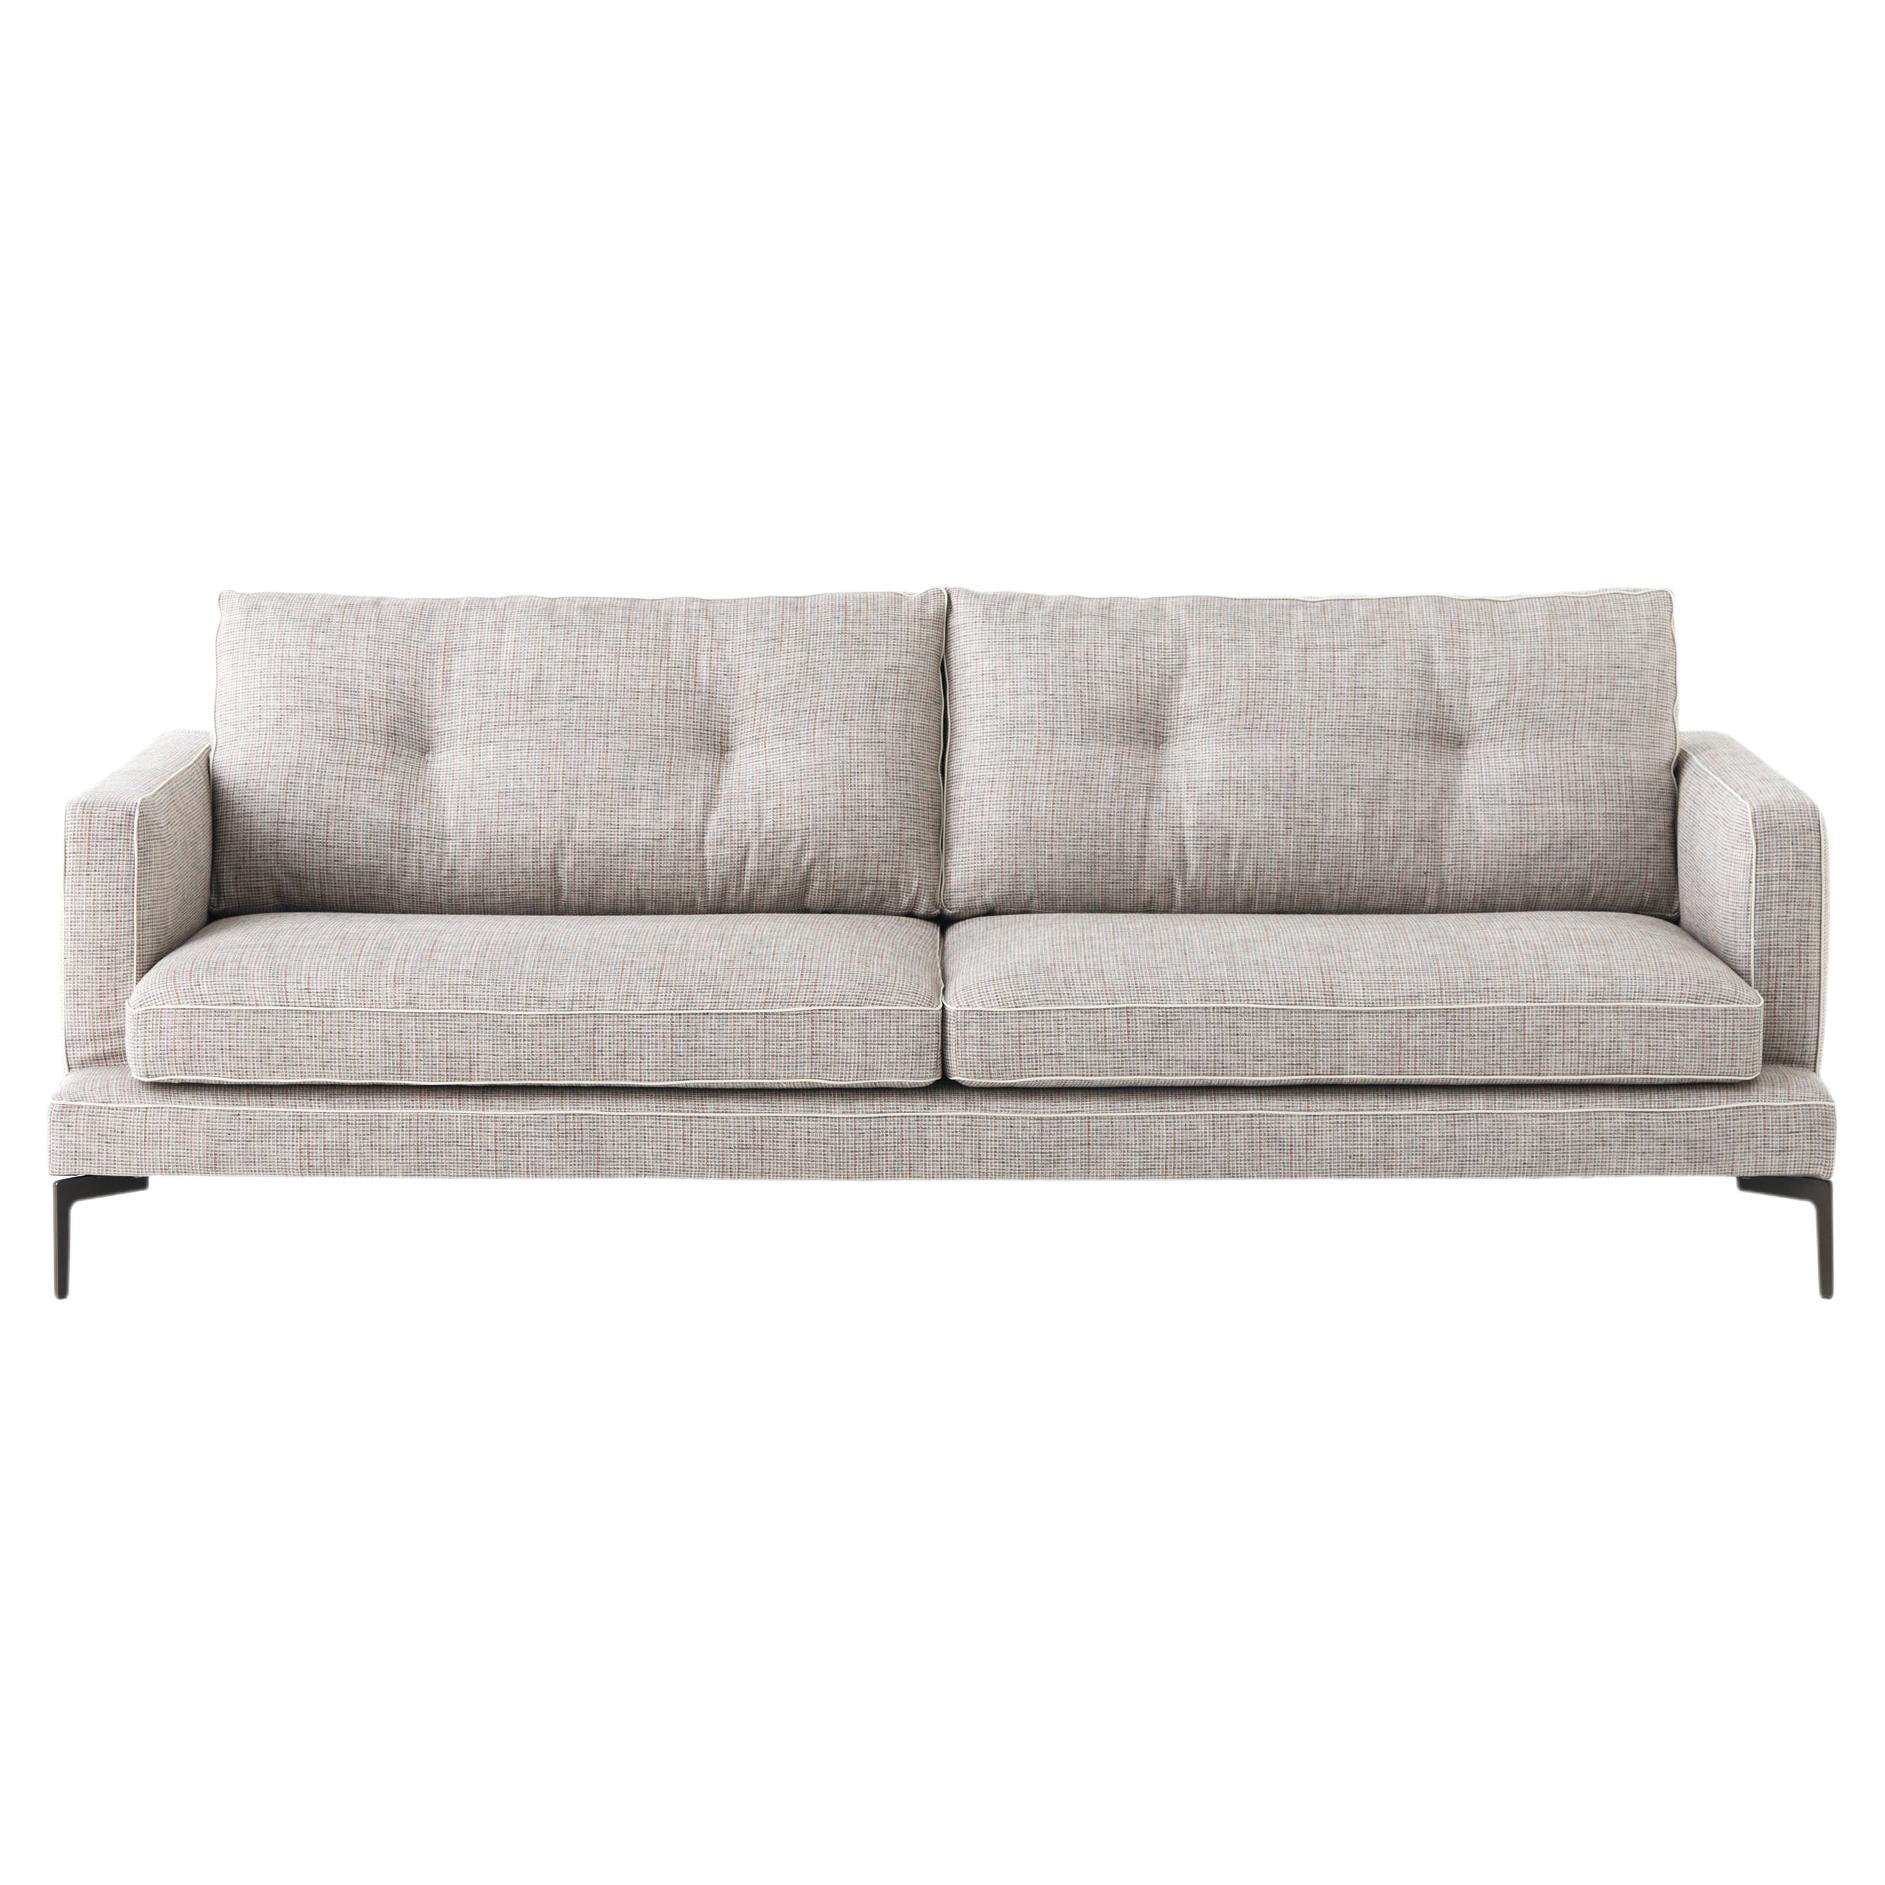 2-Sitz-Sofa 190 von Sergio Bicego mit Beigefarbener Vip-Polsterung und grauen Beinen